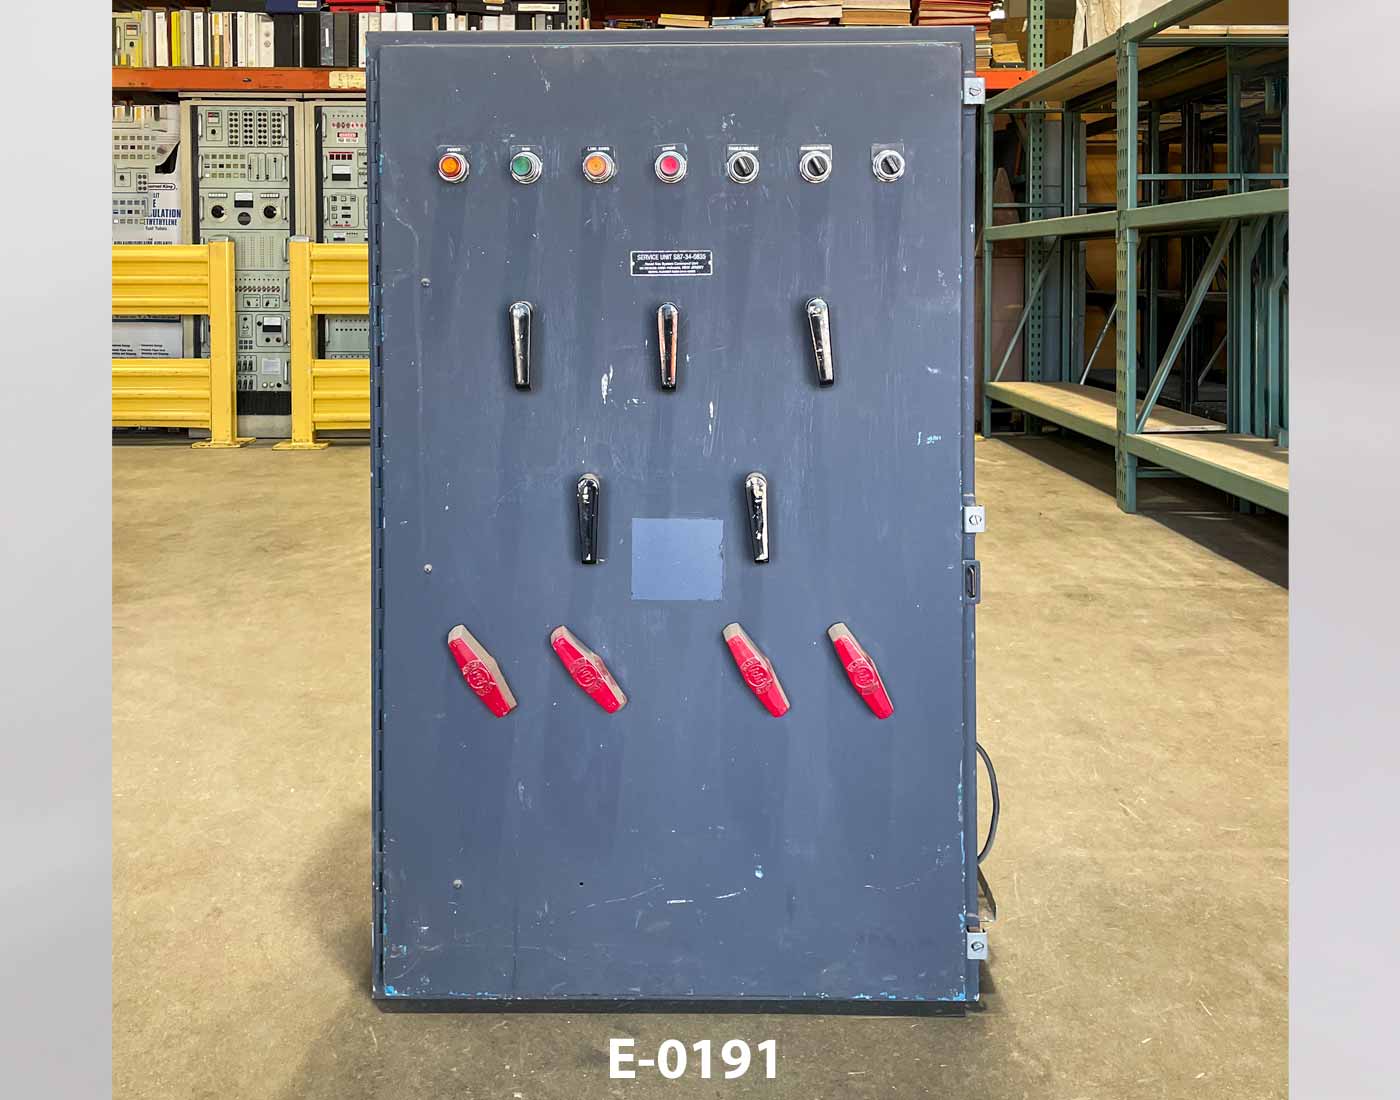 Electronic Control Panel E-0191